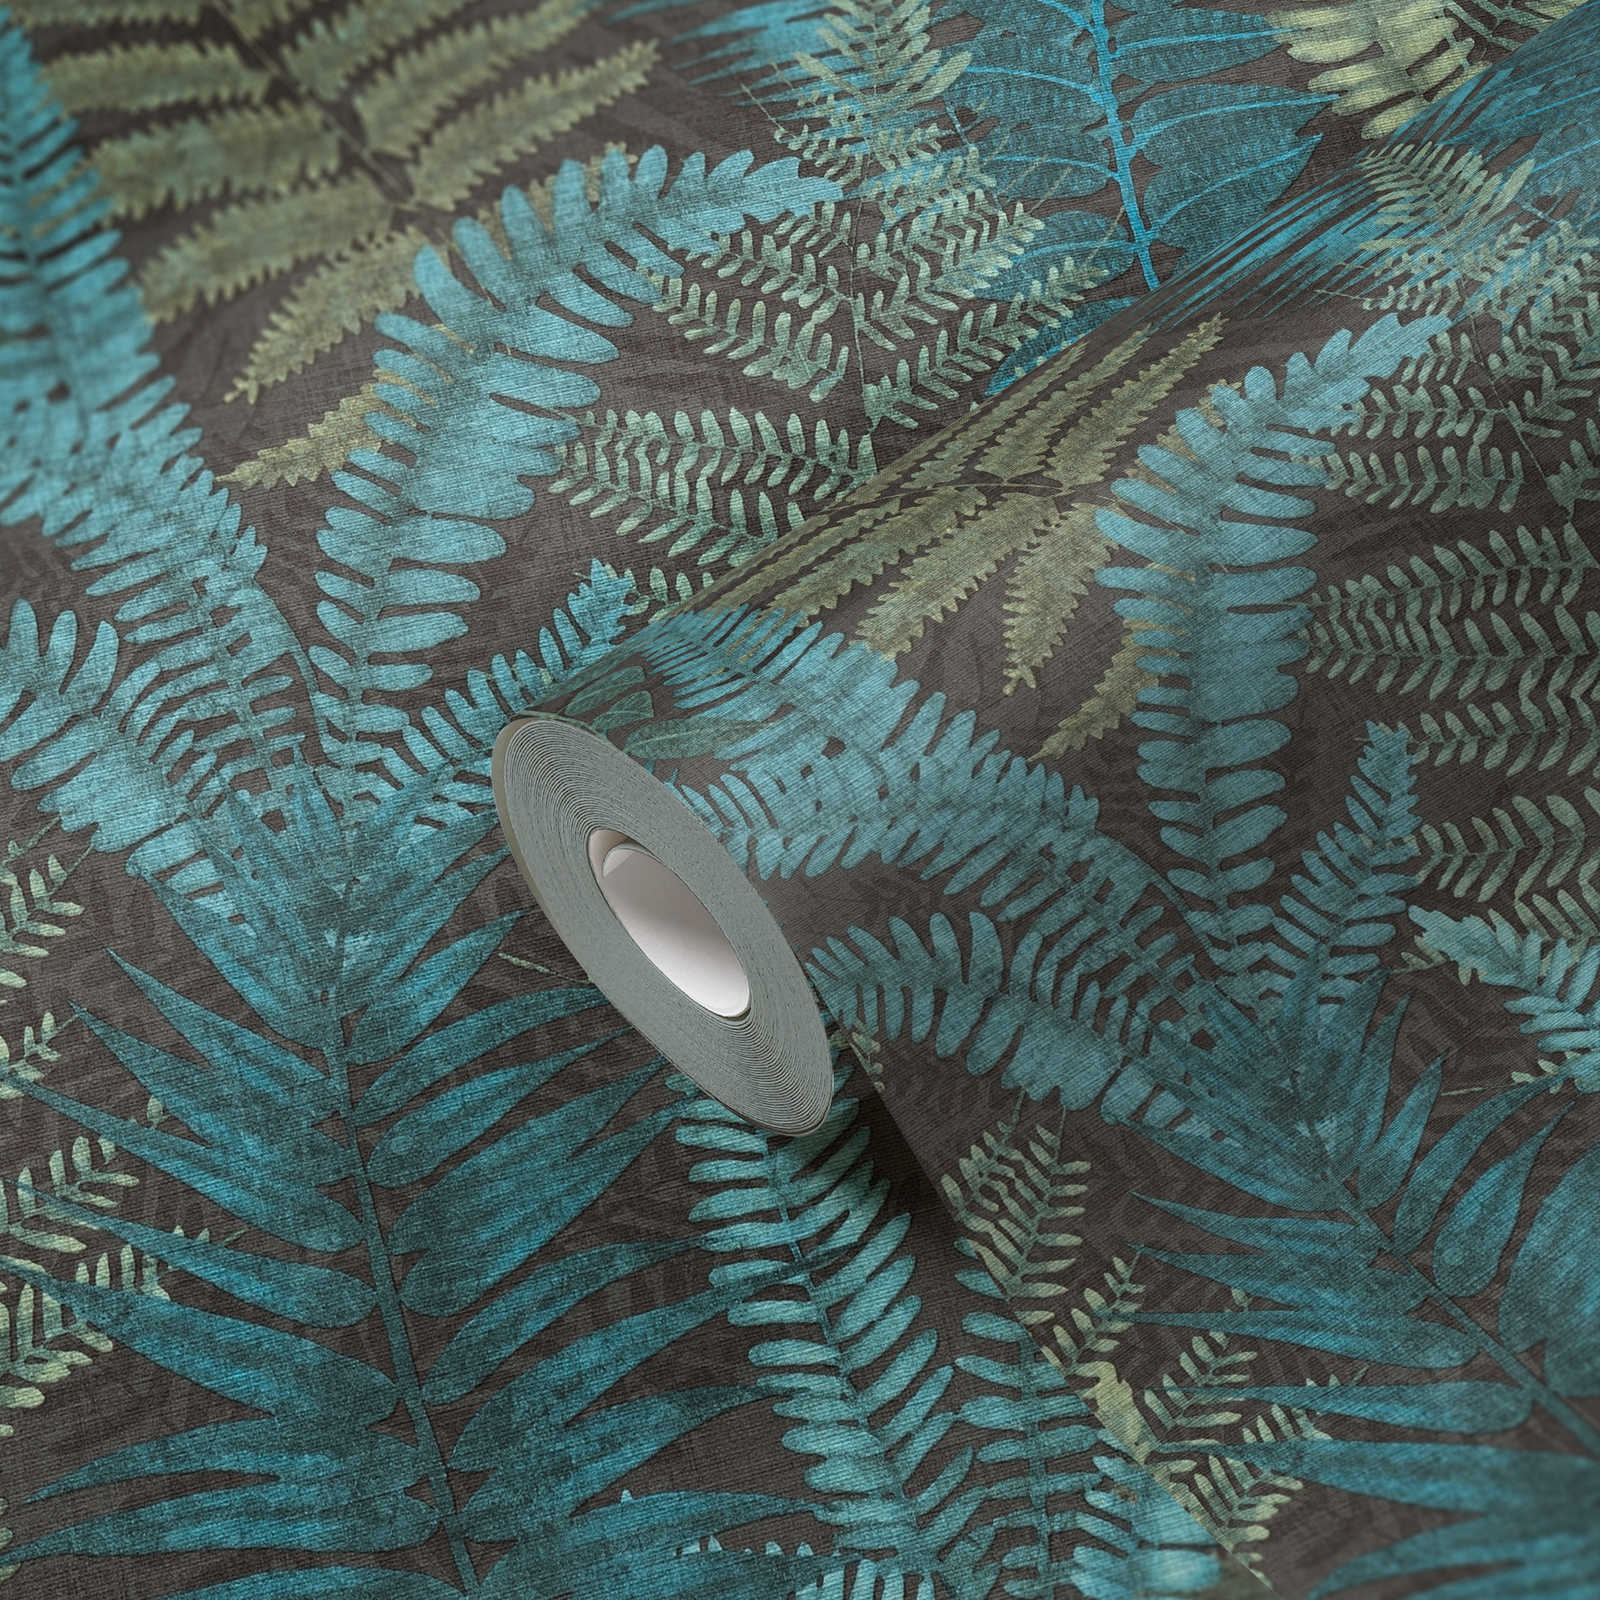             papier peint en papier intissé floral avec feuilles de fougère légèrement structuré, mat - noir, bleu, vert
        